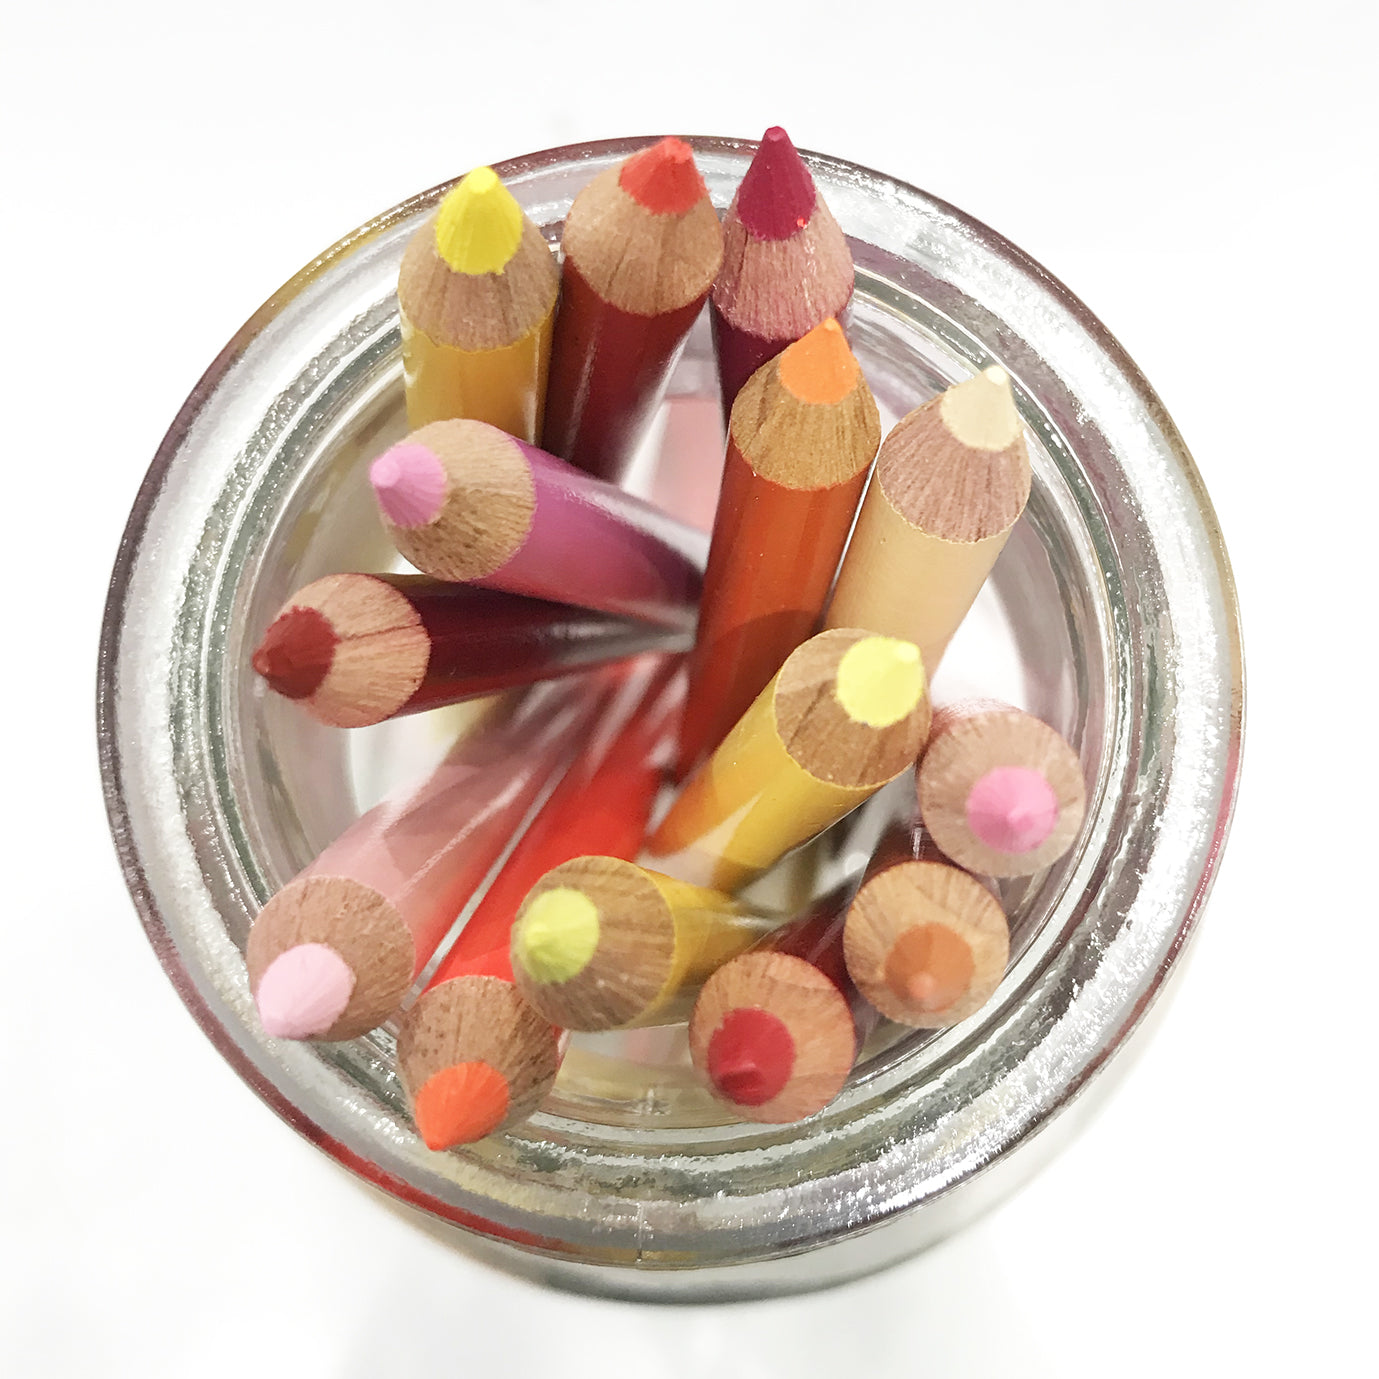 prismacolor colored pencils art